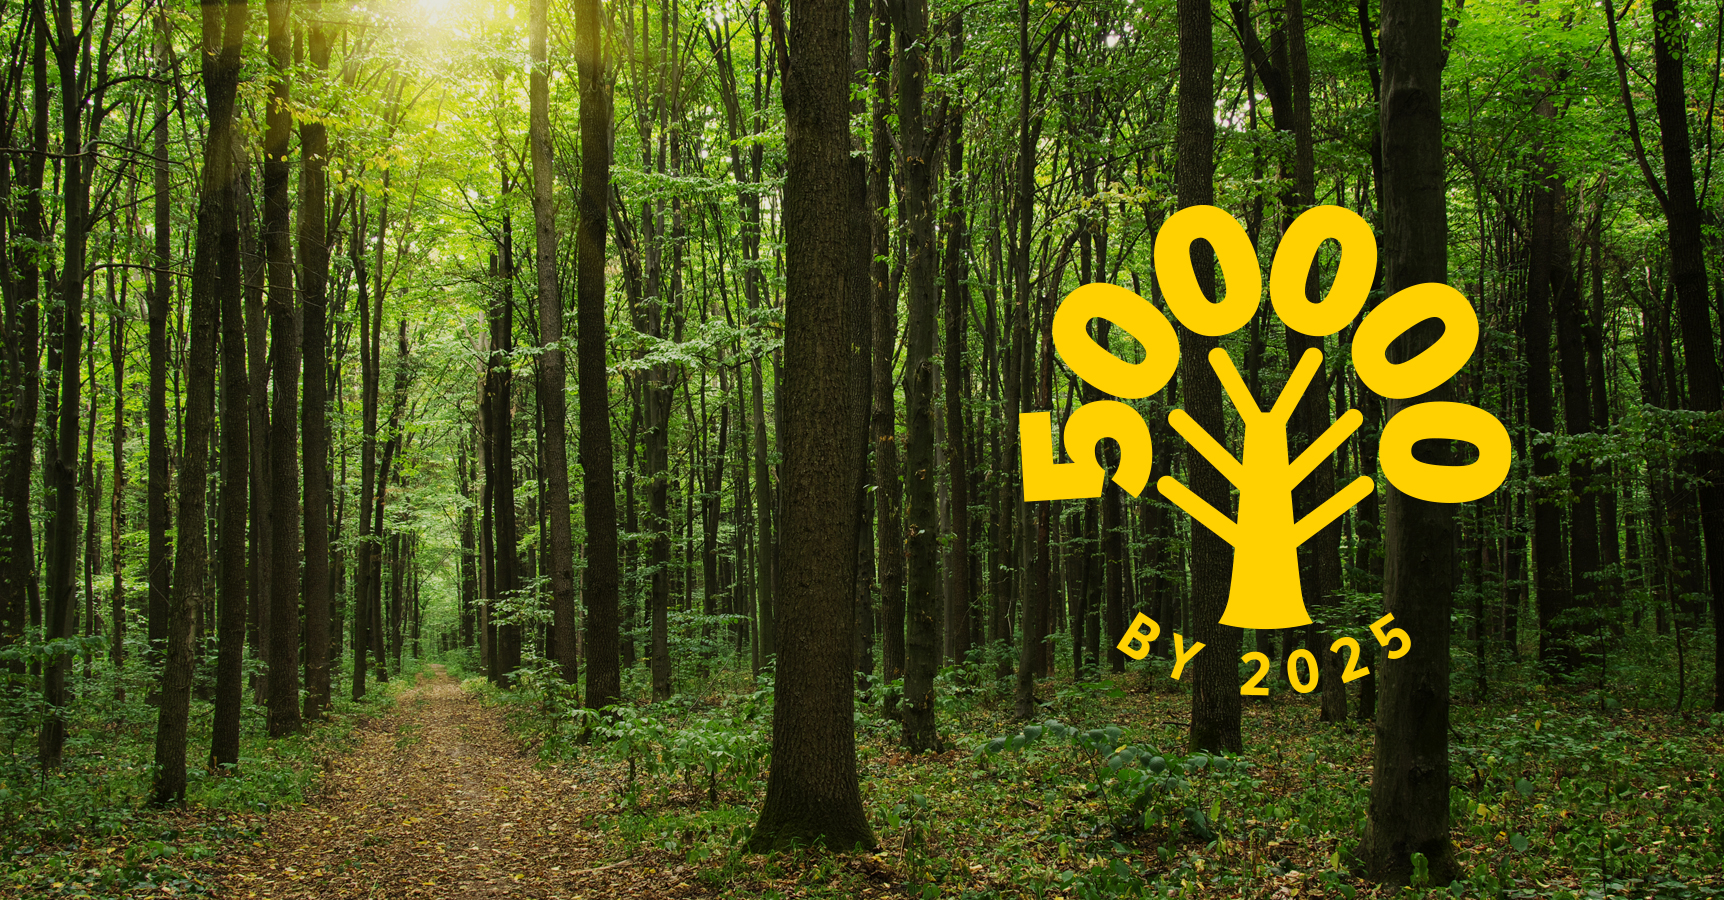 Quest Global 500000 trees pledge